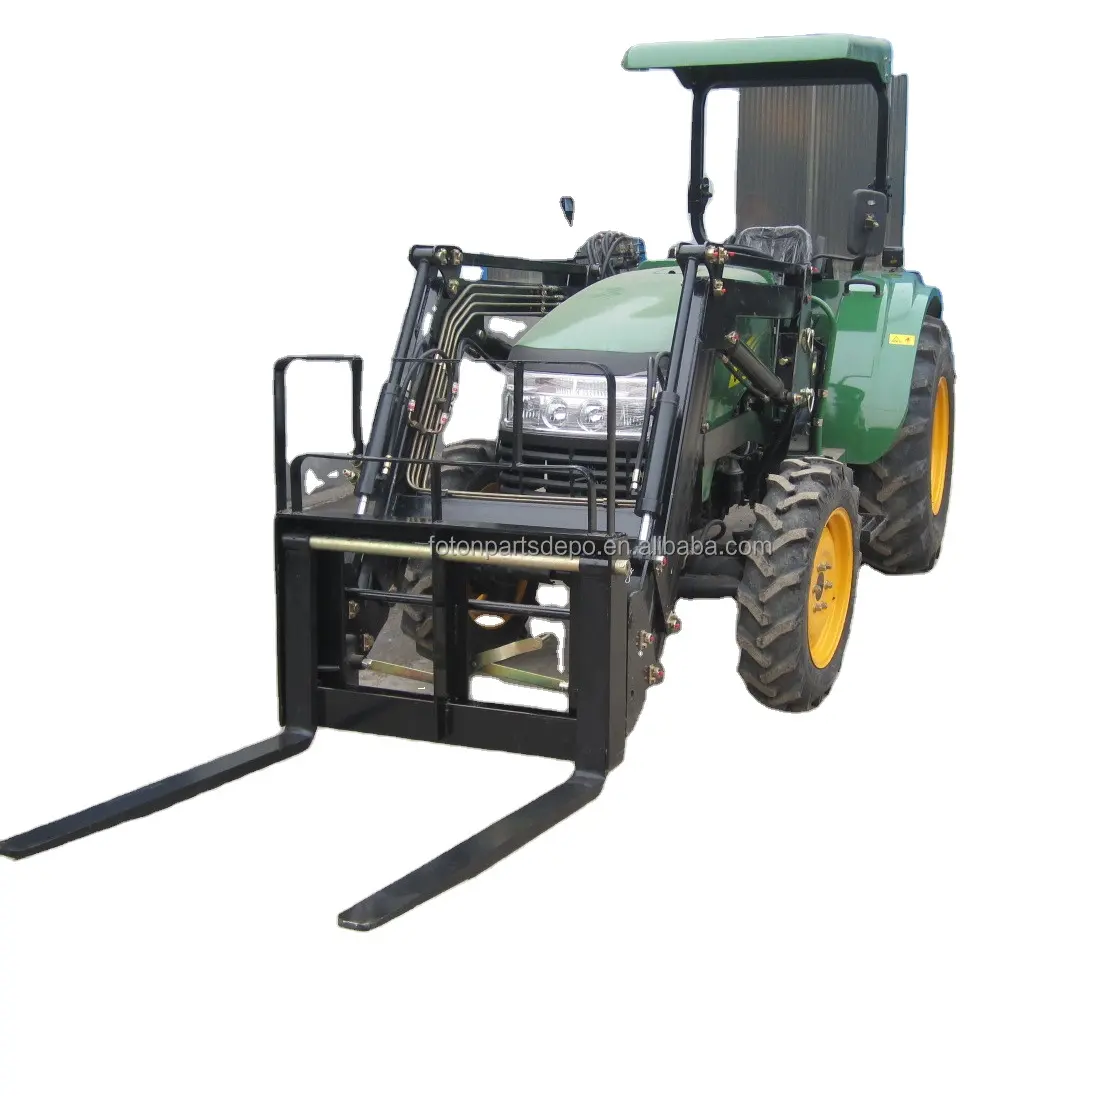 Yeni kullanılan tarım makineleri ekipmanları traktör ön uç yükleyici palet çatalı çiftlik ev kullanımı güvenilir Motor çekirdek pompa bileşeni